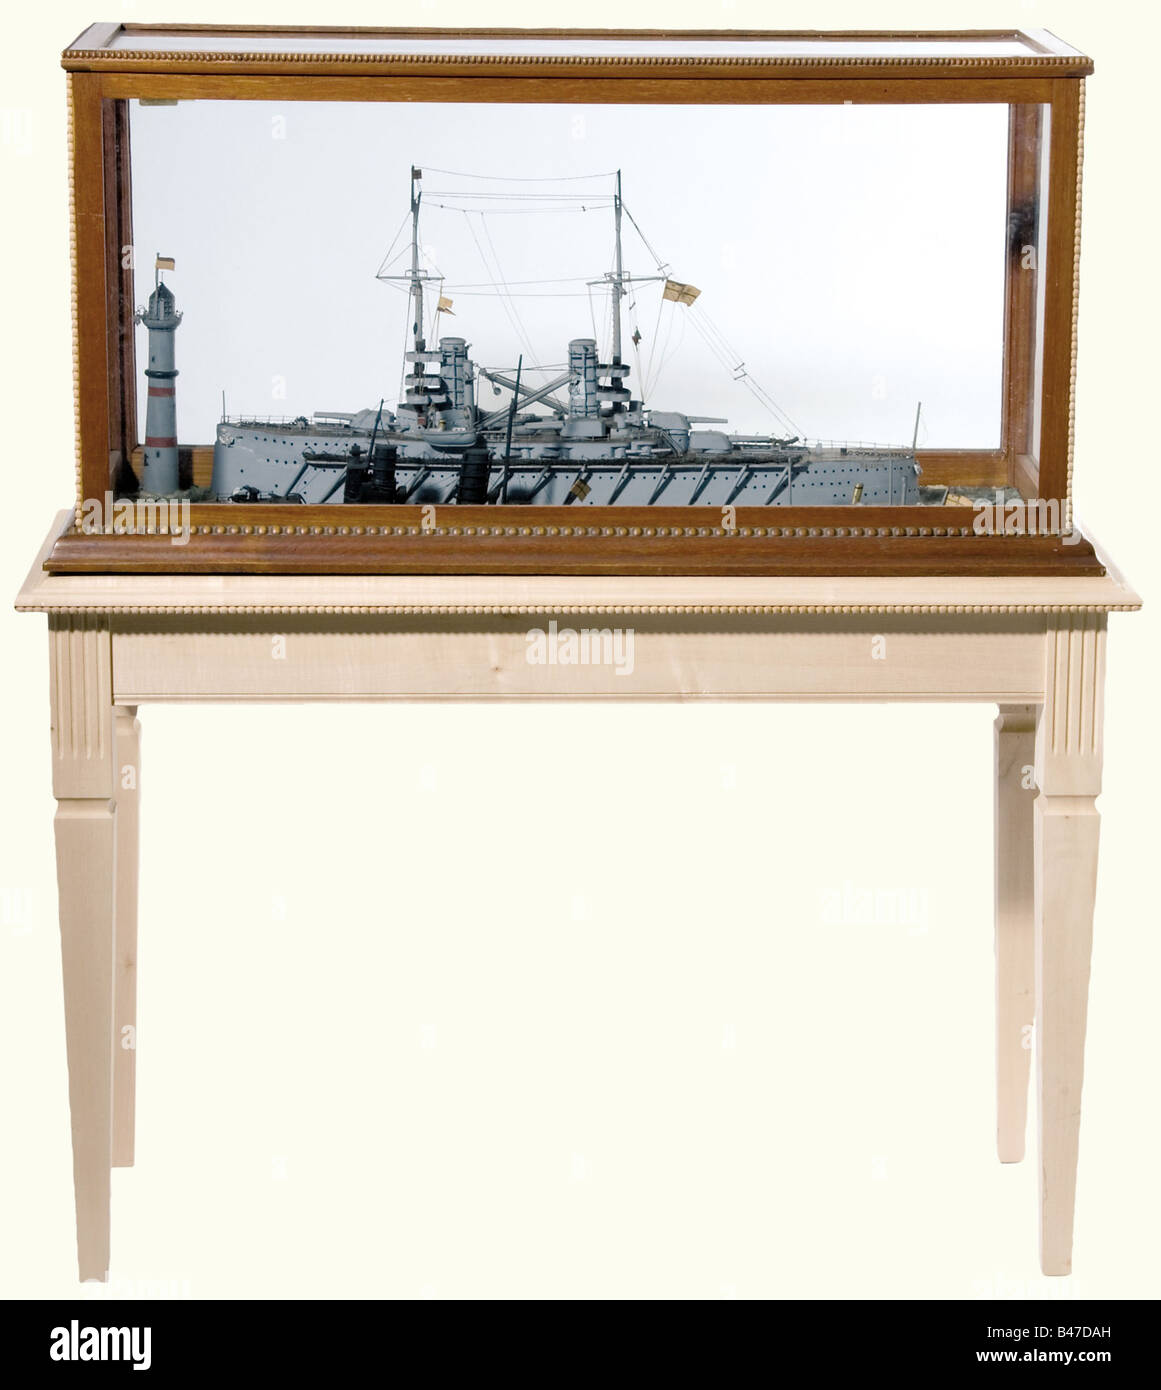 Kleine "Flotilla", ein Diorama aus der Zeit vor dem Ersten Weltkrieg. Diorama besteht aus Modellen eines imperialen Panzerkreuzers, eines Torpedobootszerstörers, des U-Boots, U-9 und einem Dampfstart. Alle Modelle sind auf einer liebevoll modellierten Wasseroberfläche mit einem Leuchtturmmodell. In einem glasierten Gehäuse auf einem individuell angepassten Anzeigetisch. Alter Risse in der Wasseroberfläche. Gehäuseabmessungen 108 x 52 x 29 cm. Höhe einschließlich der Display-Tabelle 126 cm. Dekoratives Diorama einer kaiserlichen Flotte aus der Zeit um 1910. Historisch, historisch, 1910er, 20. Jahrhundert, Marine, Marine fo, Stockfoto